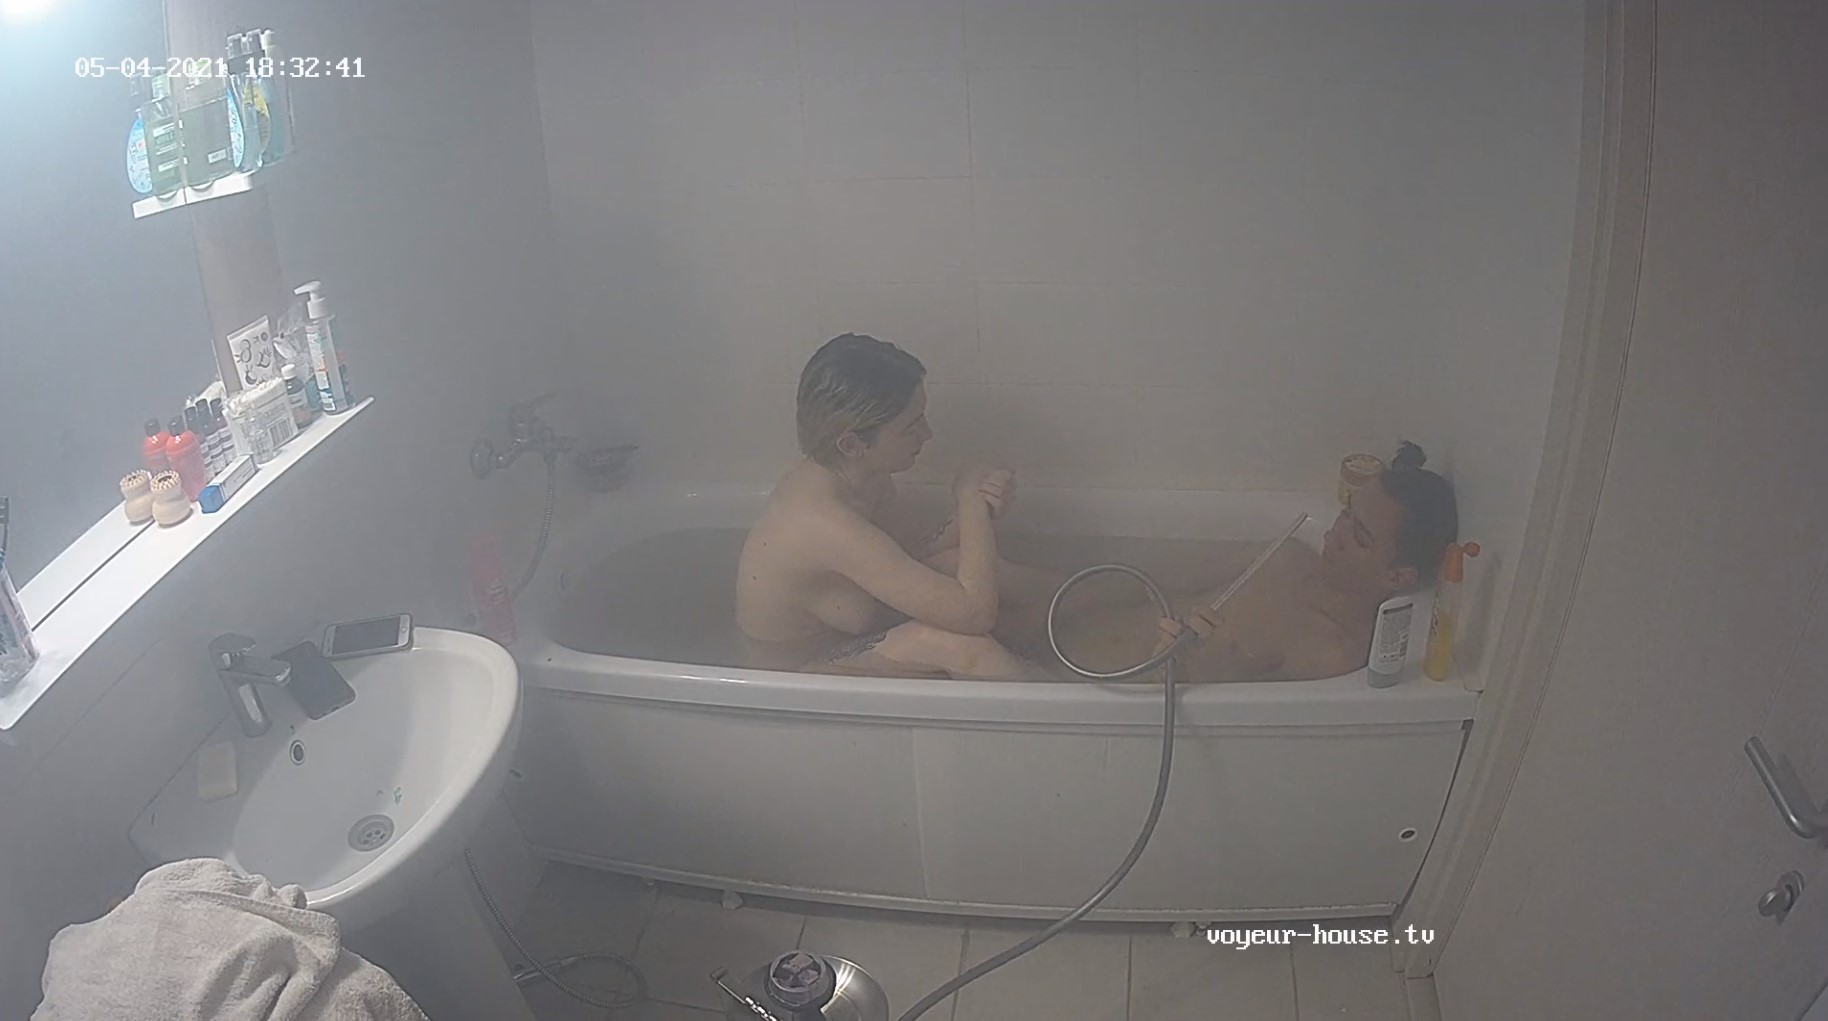 Kamilla & Ilyas smokey bath, May04/21